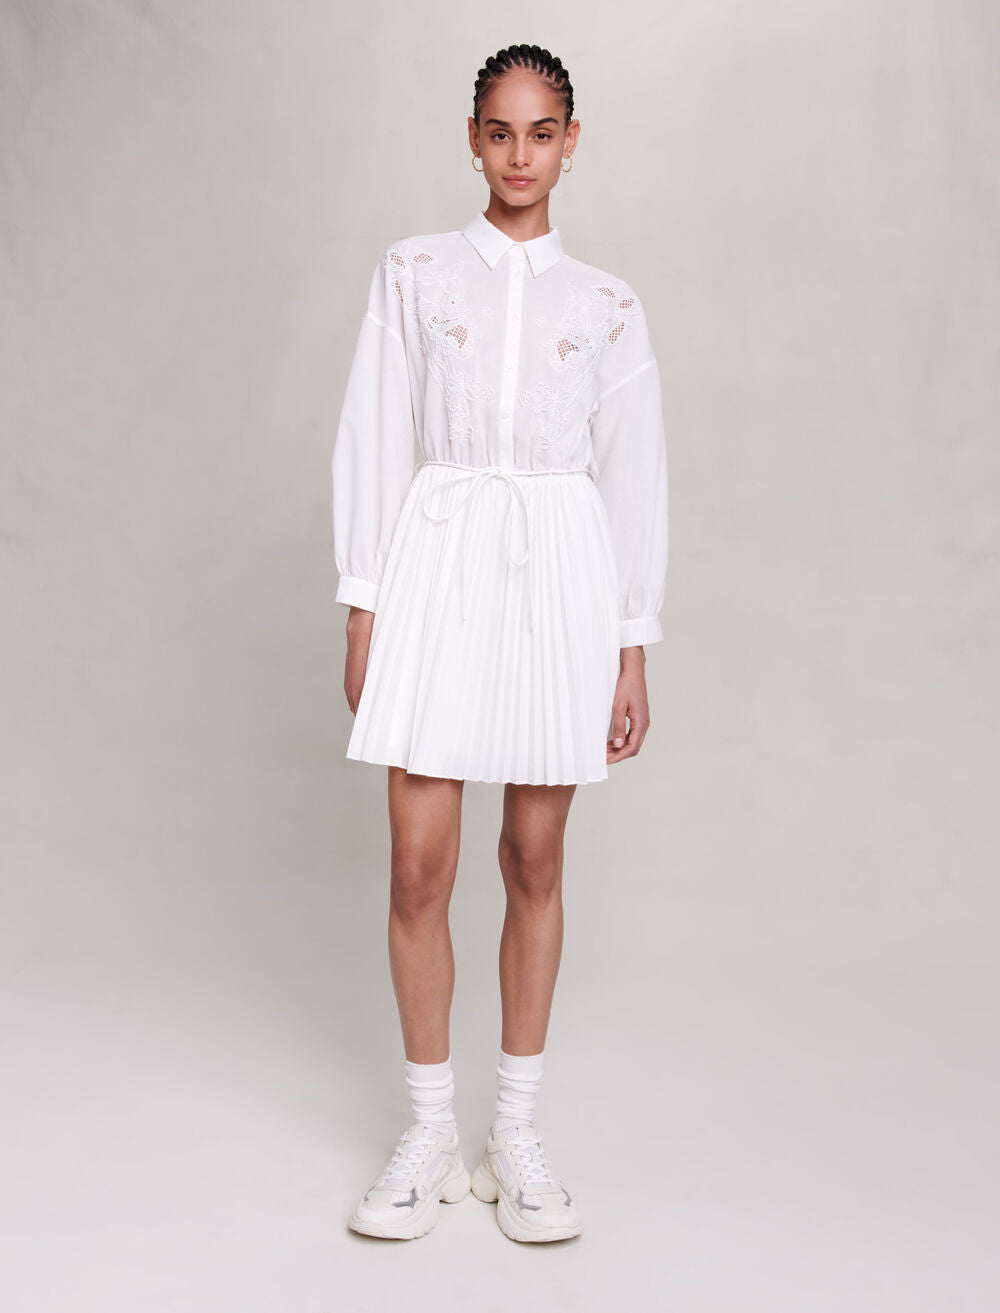 White featured SHORT SHIRT DRESS